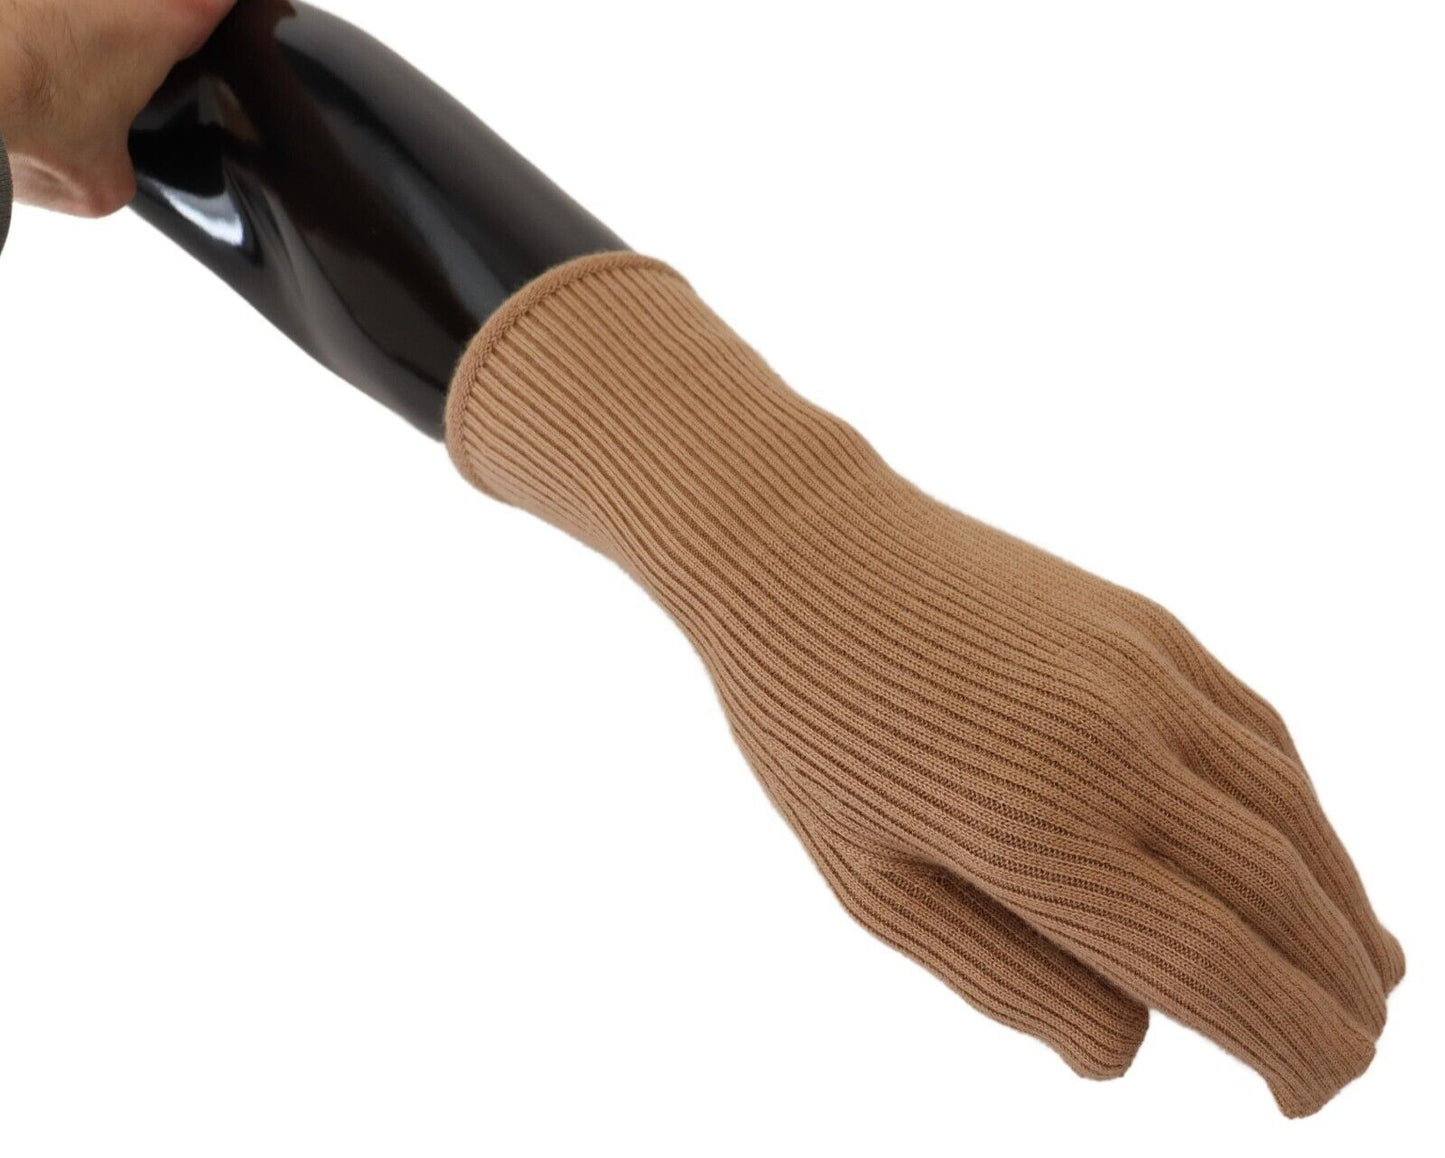 Elegant Beige Cashmere Winter Gloves